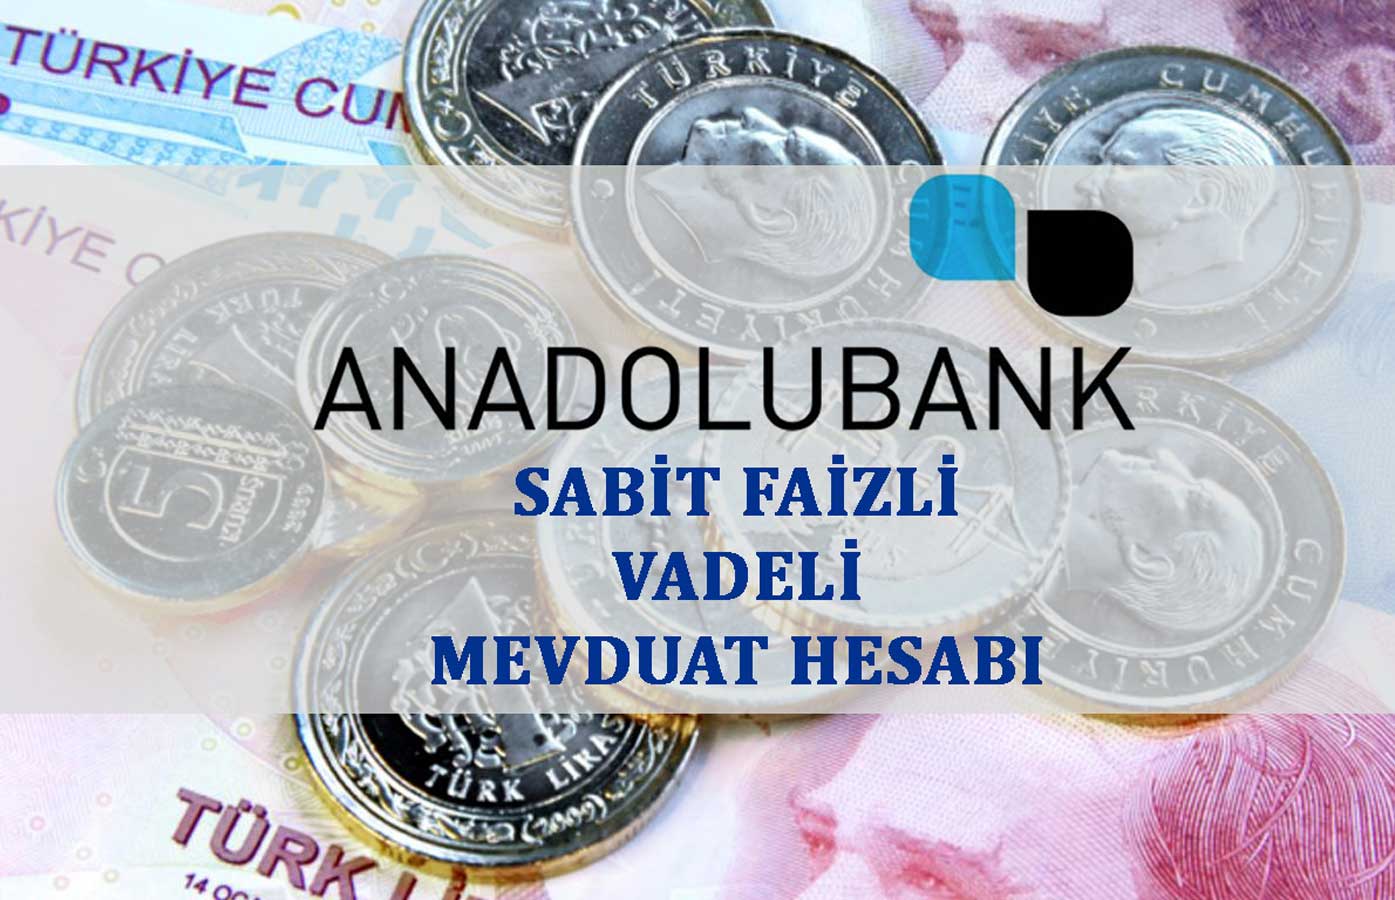 Anadolubank Vadeli Mevduat Hesabı